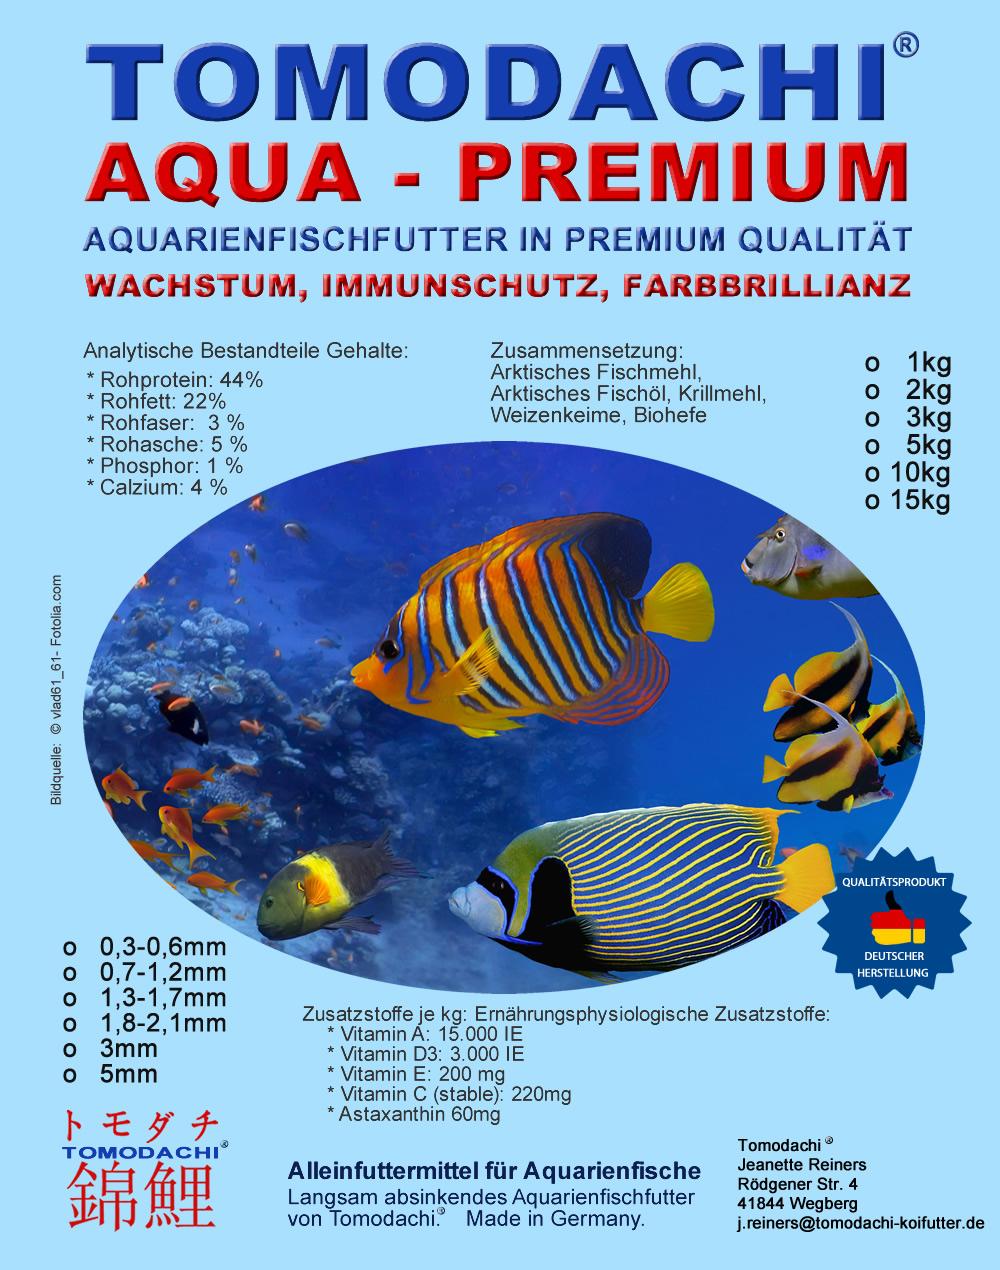 Tomodachi Aquarienfischfutter – Aqua Premium Qualitätsfutter für Zierfische, Energiefutter für alle Aquarienfische mit Astaxanthin Farbschutz und Immunschutz